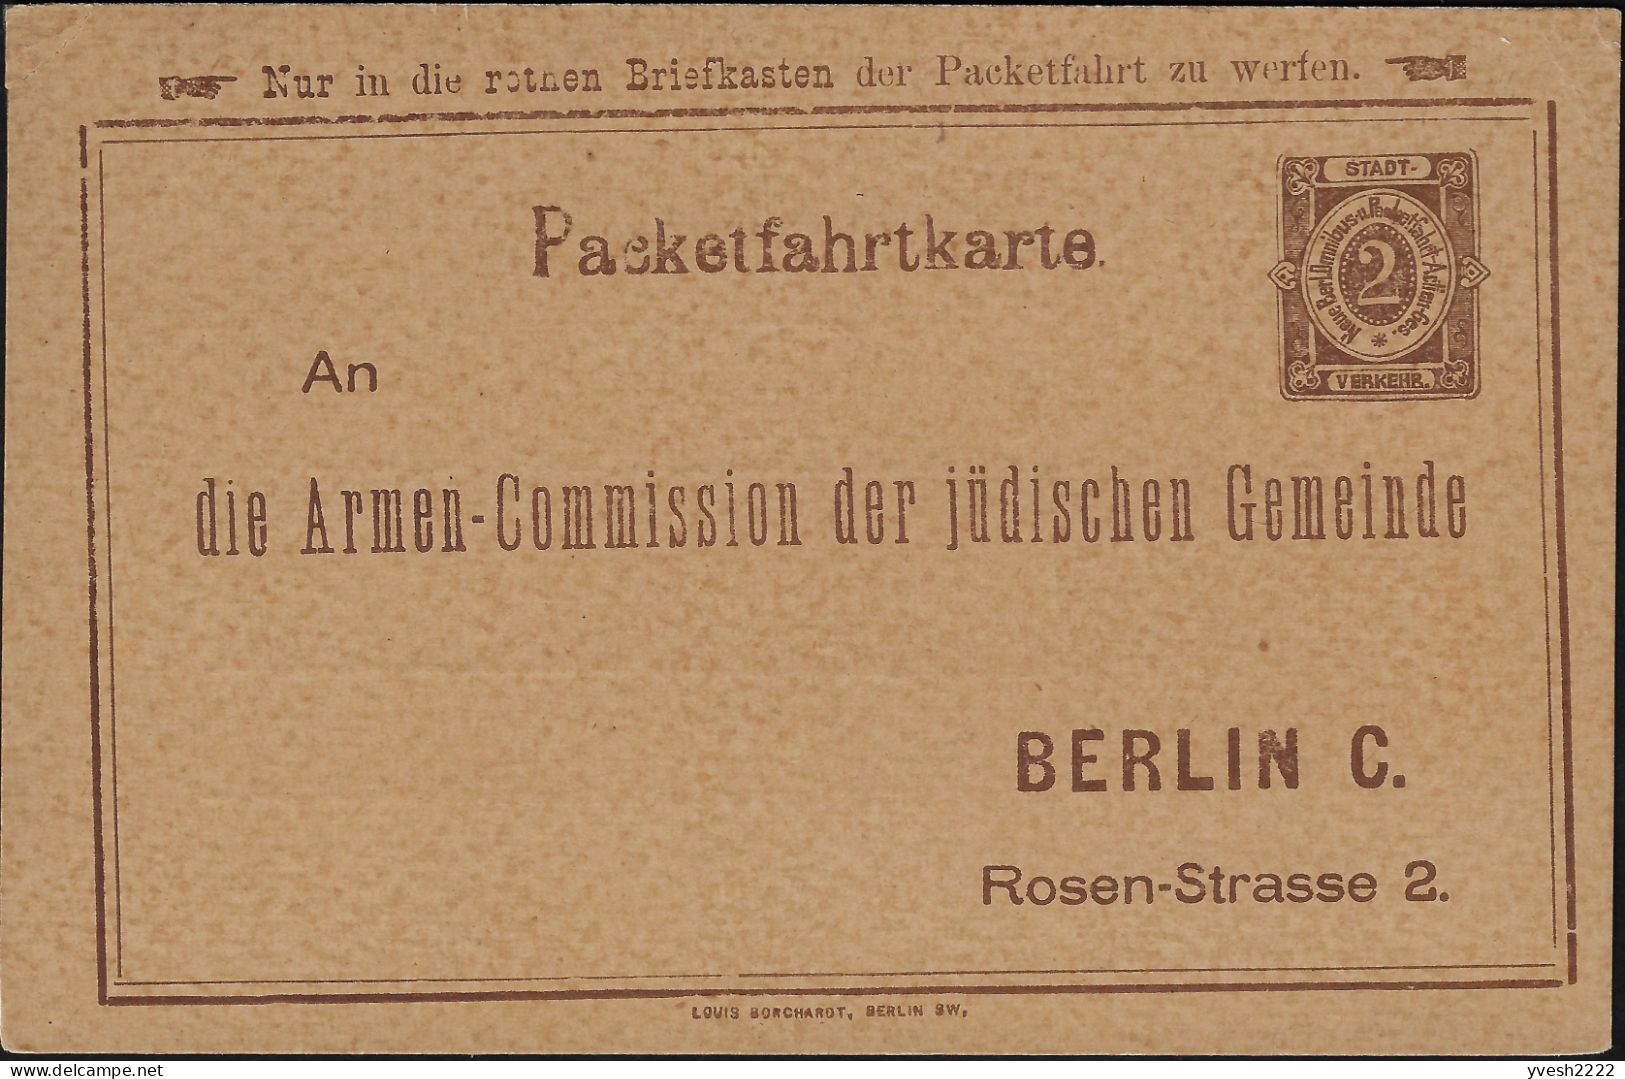 Berlin 1886 1888, 1897. 3 Entiers Postaux Poste Privée. Collecte De Fonds Pour Les Pauvres De La Communauté Juive Locale - Judaika, Judentum